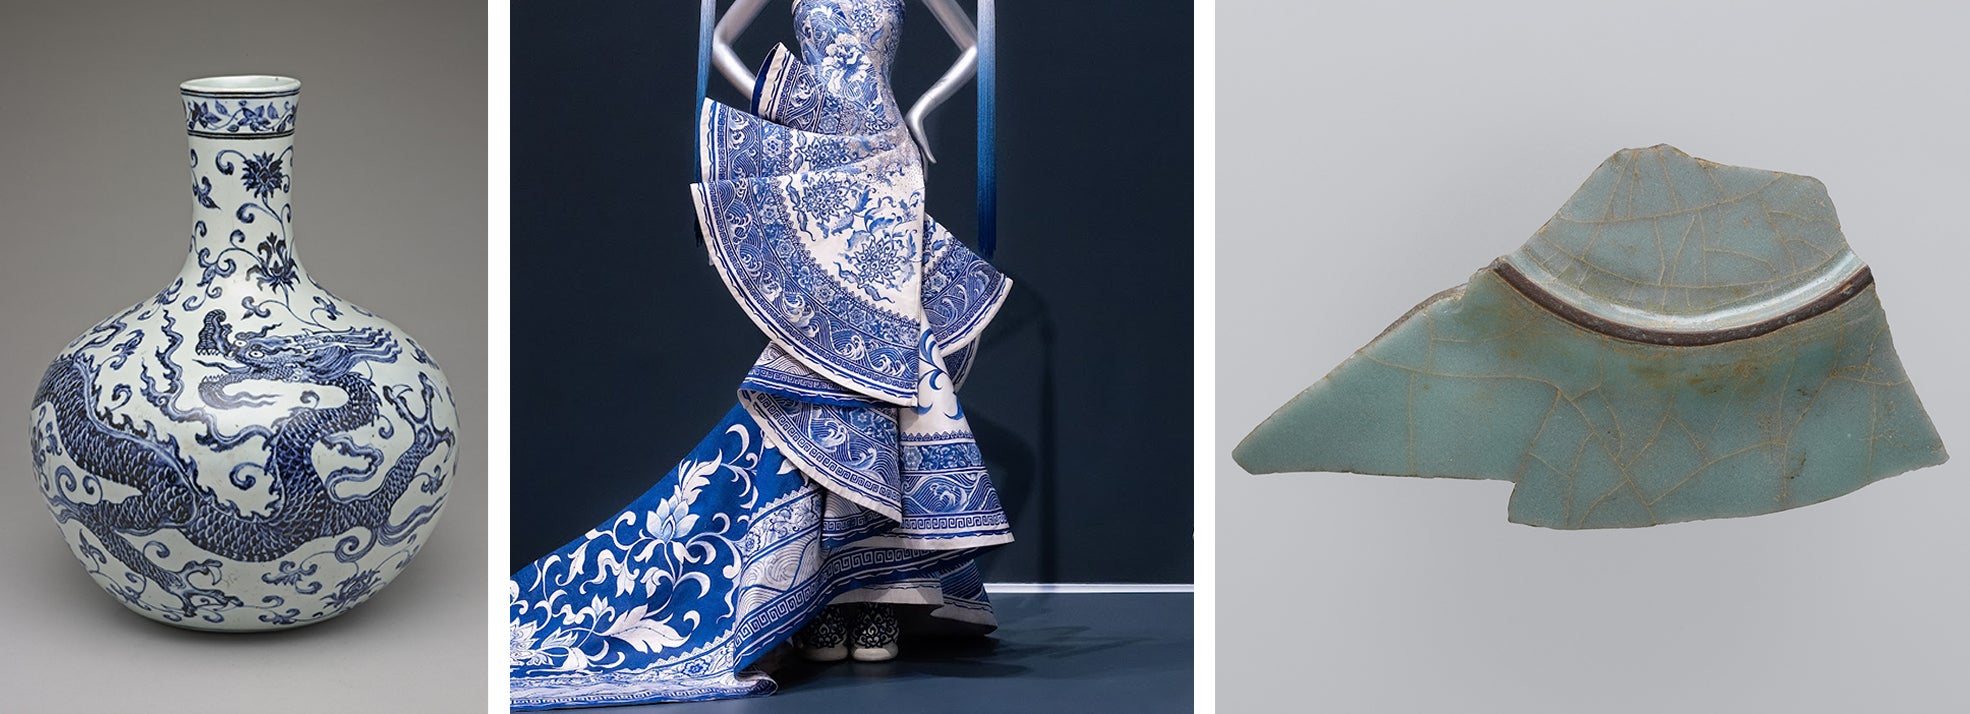 Beauty in a Broken World: Guo Pei Reimagines Ornamental Objects